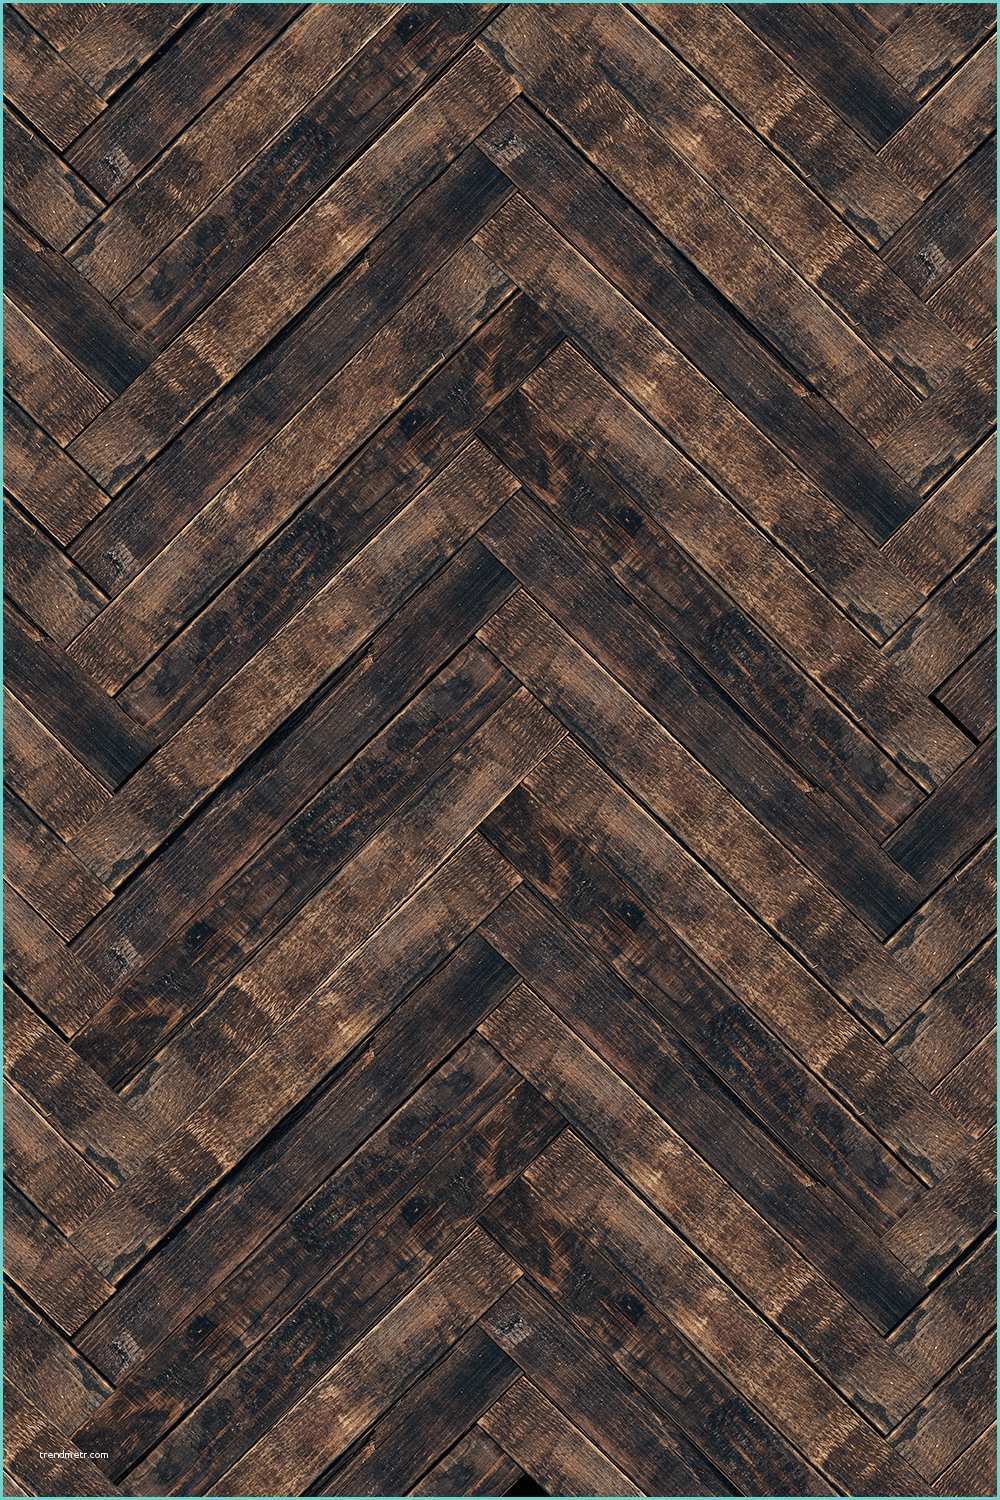 Herringbone Floors Pictures Herringbone Wood Floor Drop